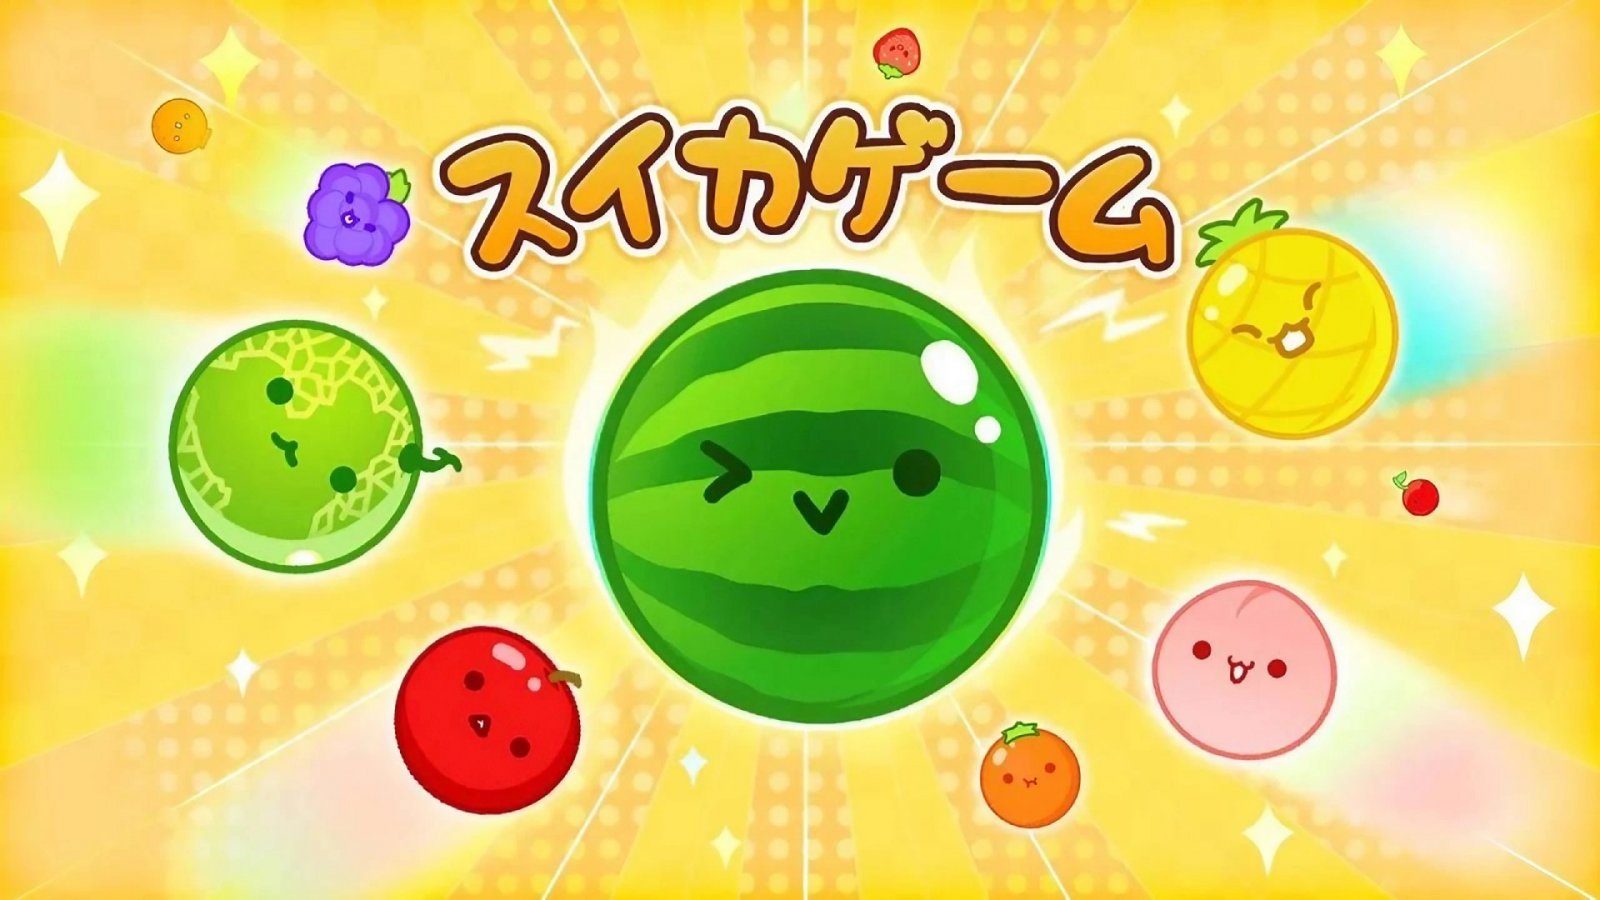 Suika Game arriva su iOS, già disponibile su App Store in Giappone